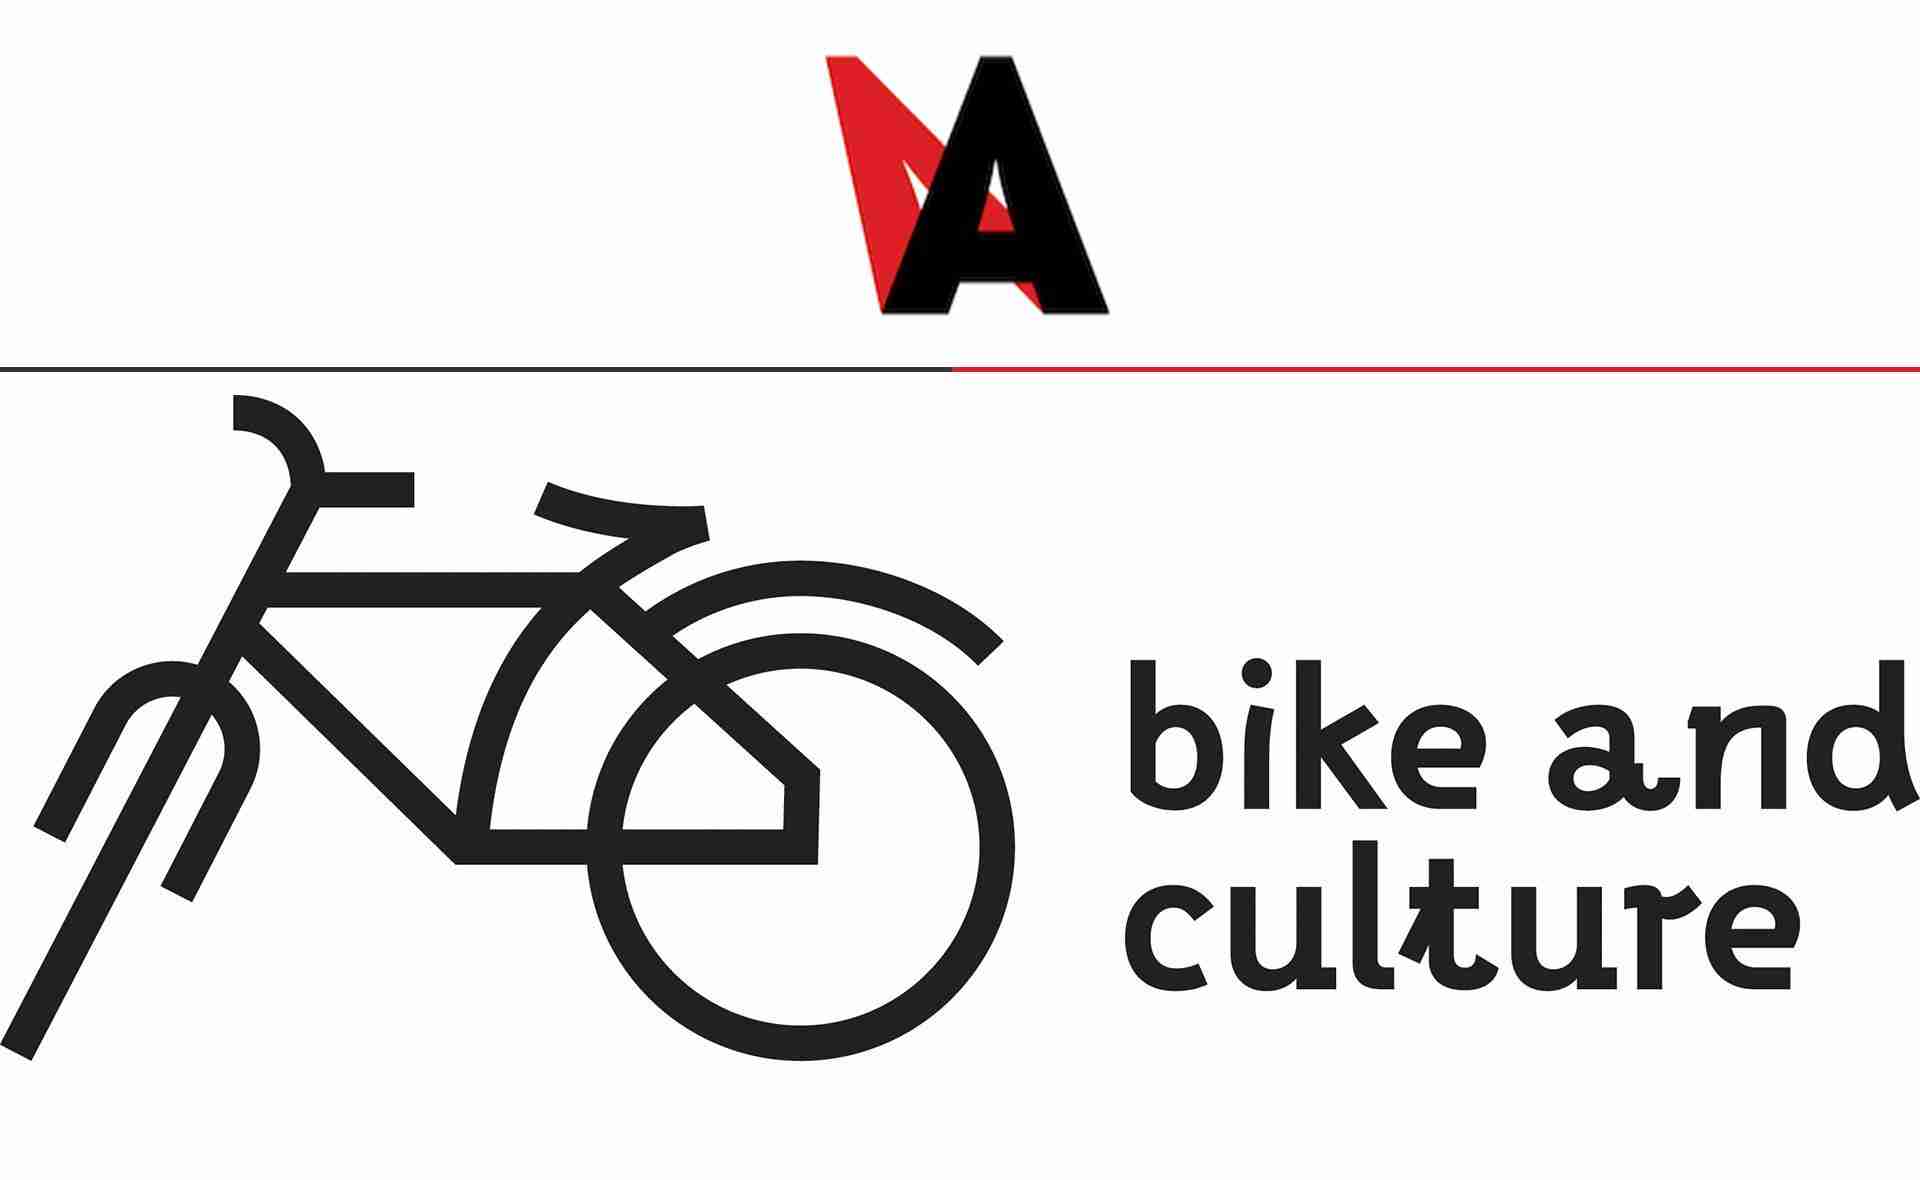 Проектът на Институт Лист София Bike and Culture е в краткия списък на наградите АртАкция на годината